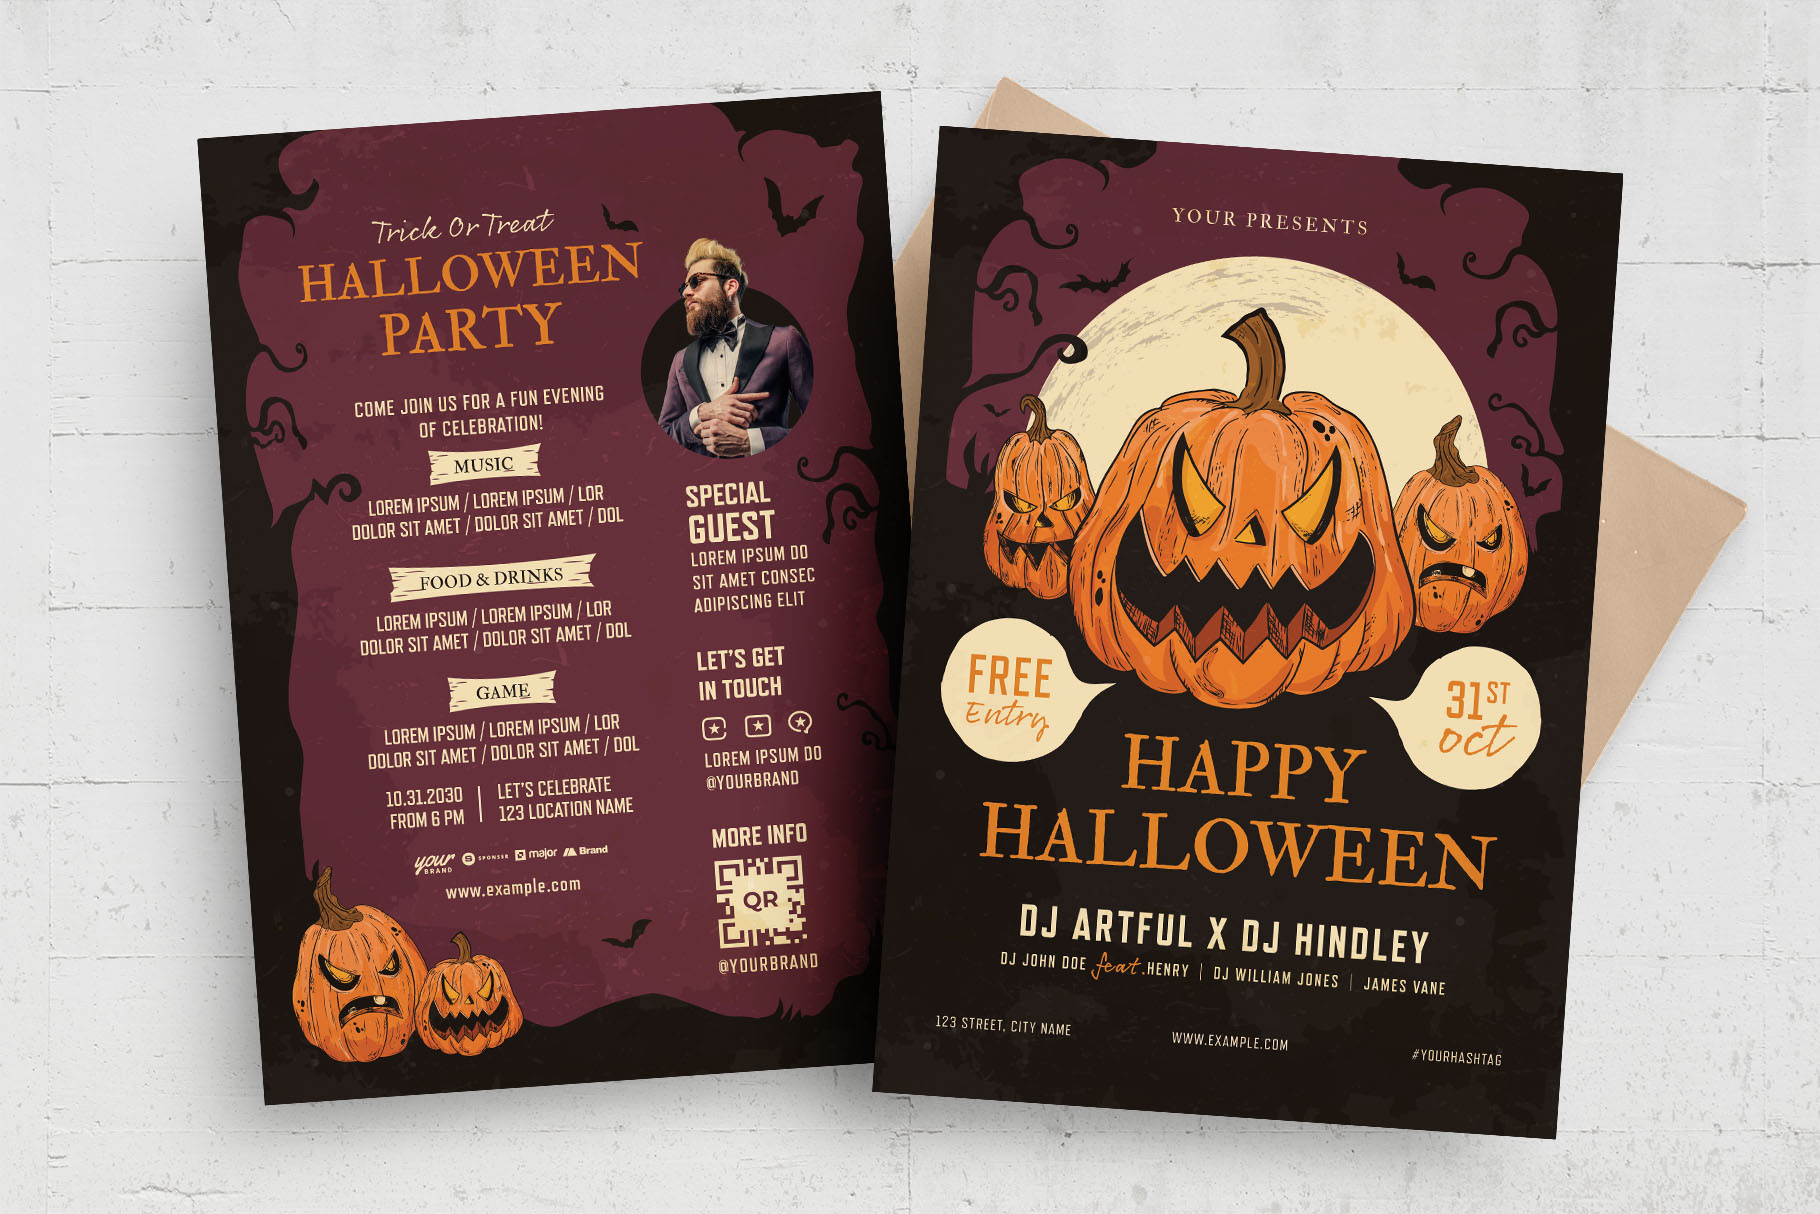 Halloween Pumpkin Flyer Template (PSD, AI, EPS Format)